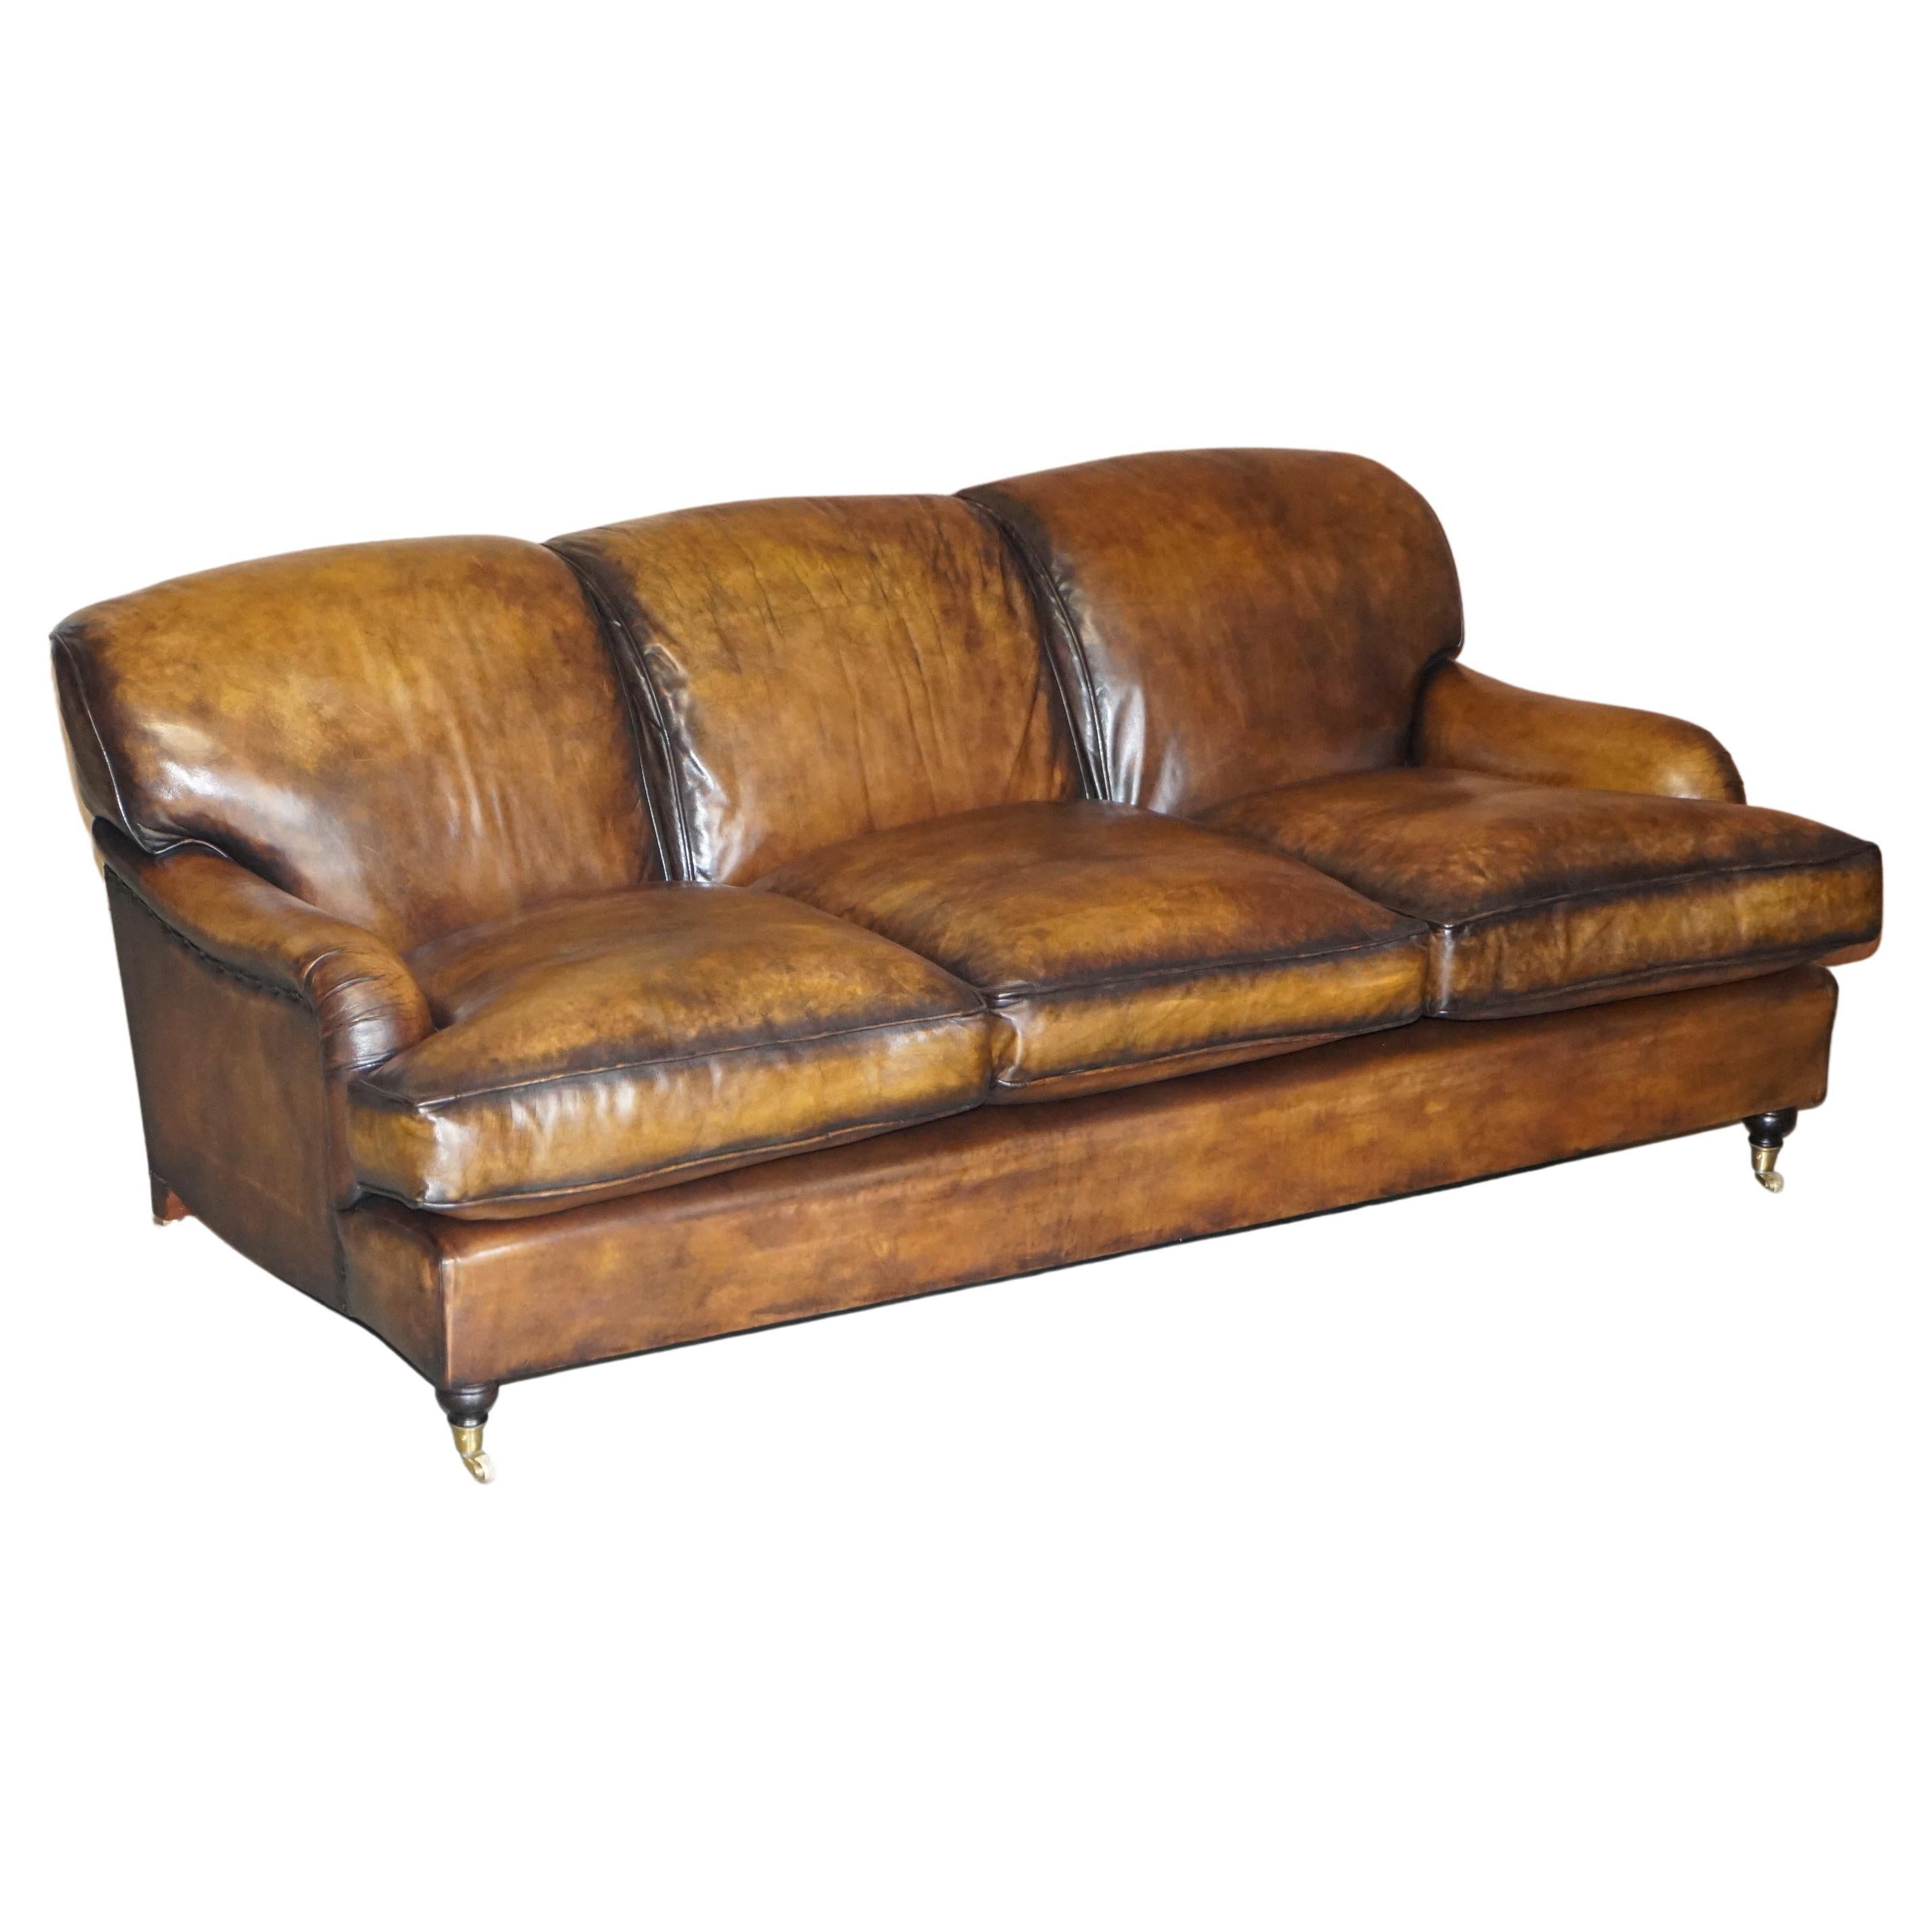 Superbe canapé vintage entièrement restauré en cuir marron teint à la main, style Howard & Sons